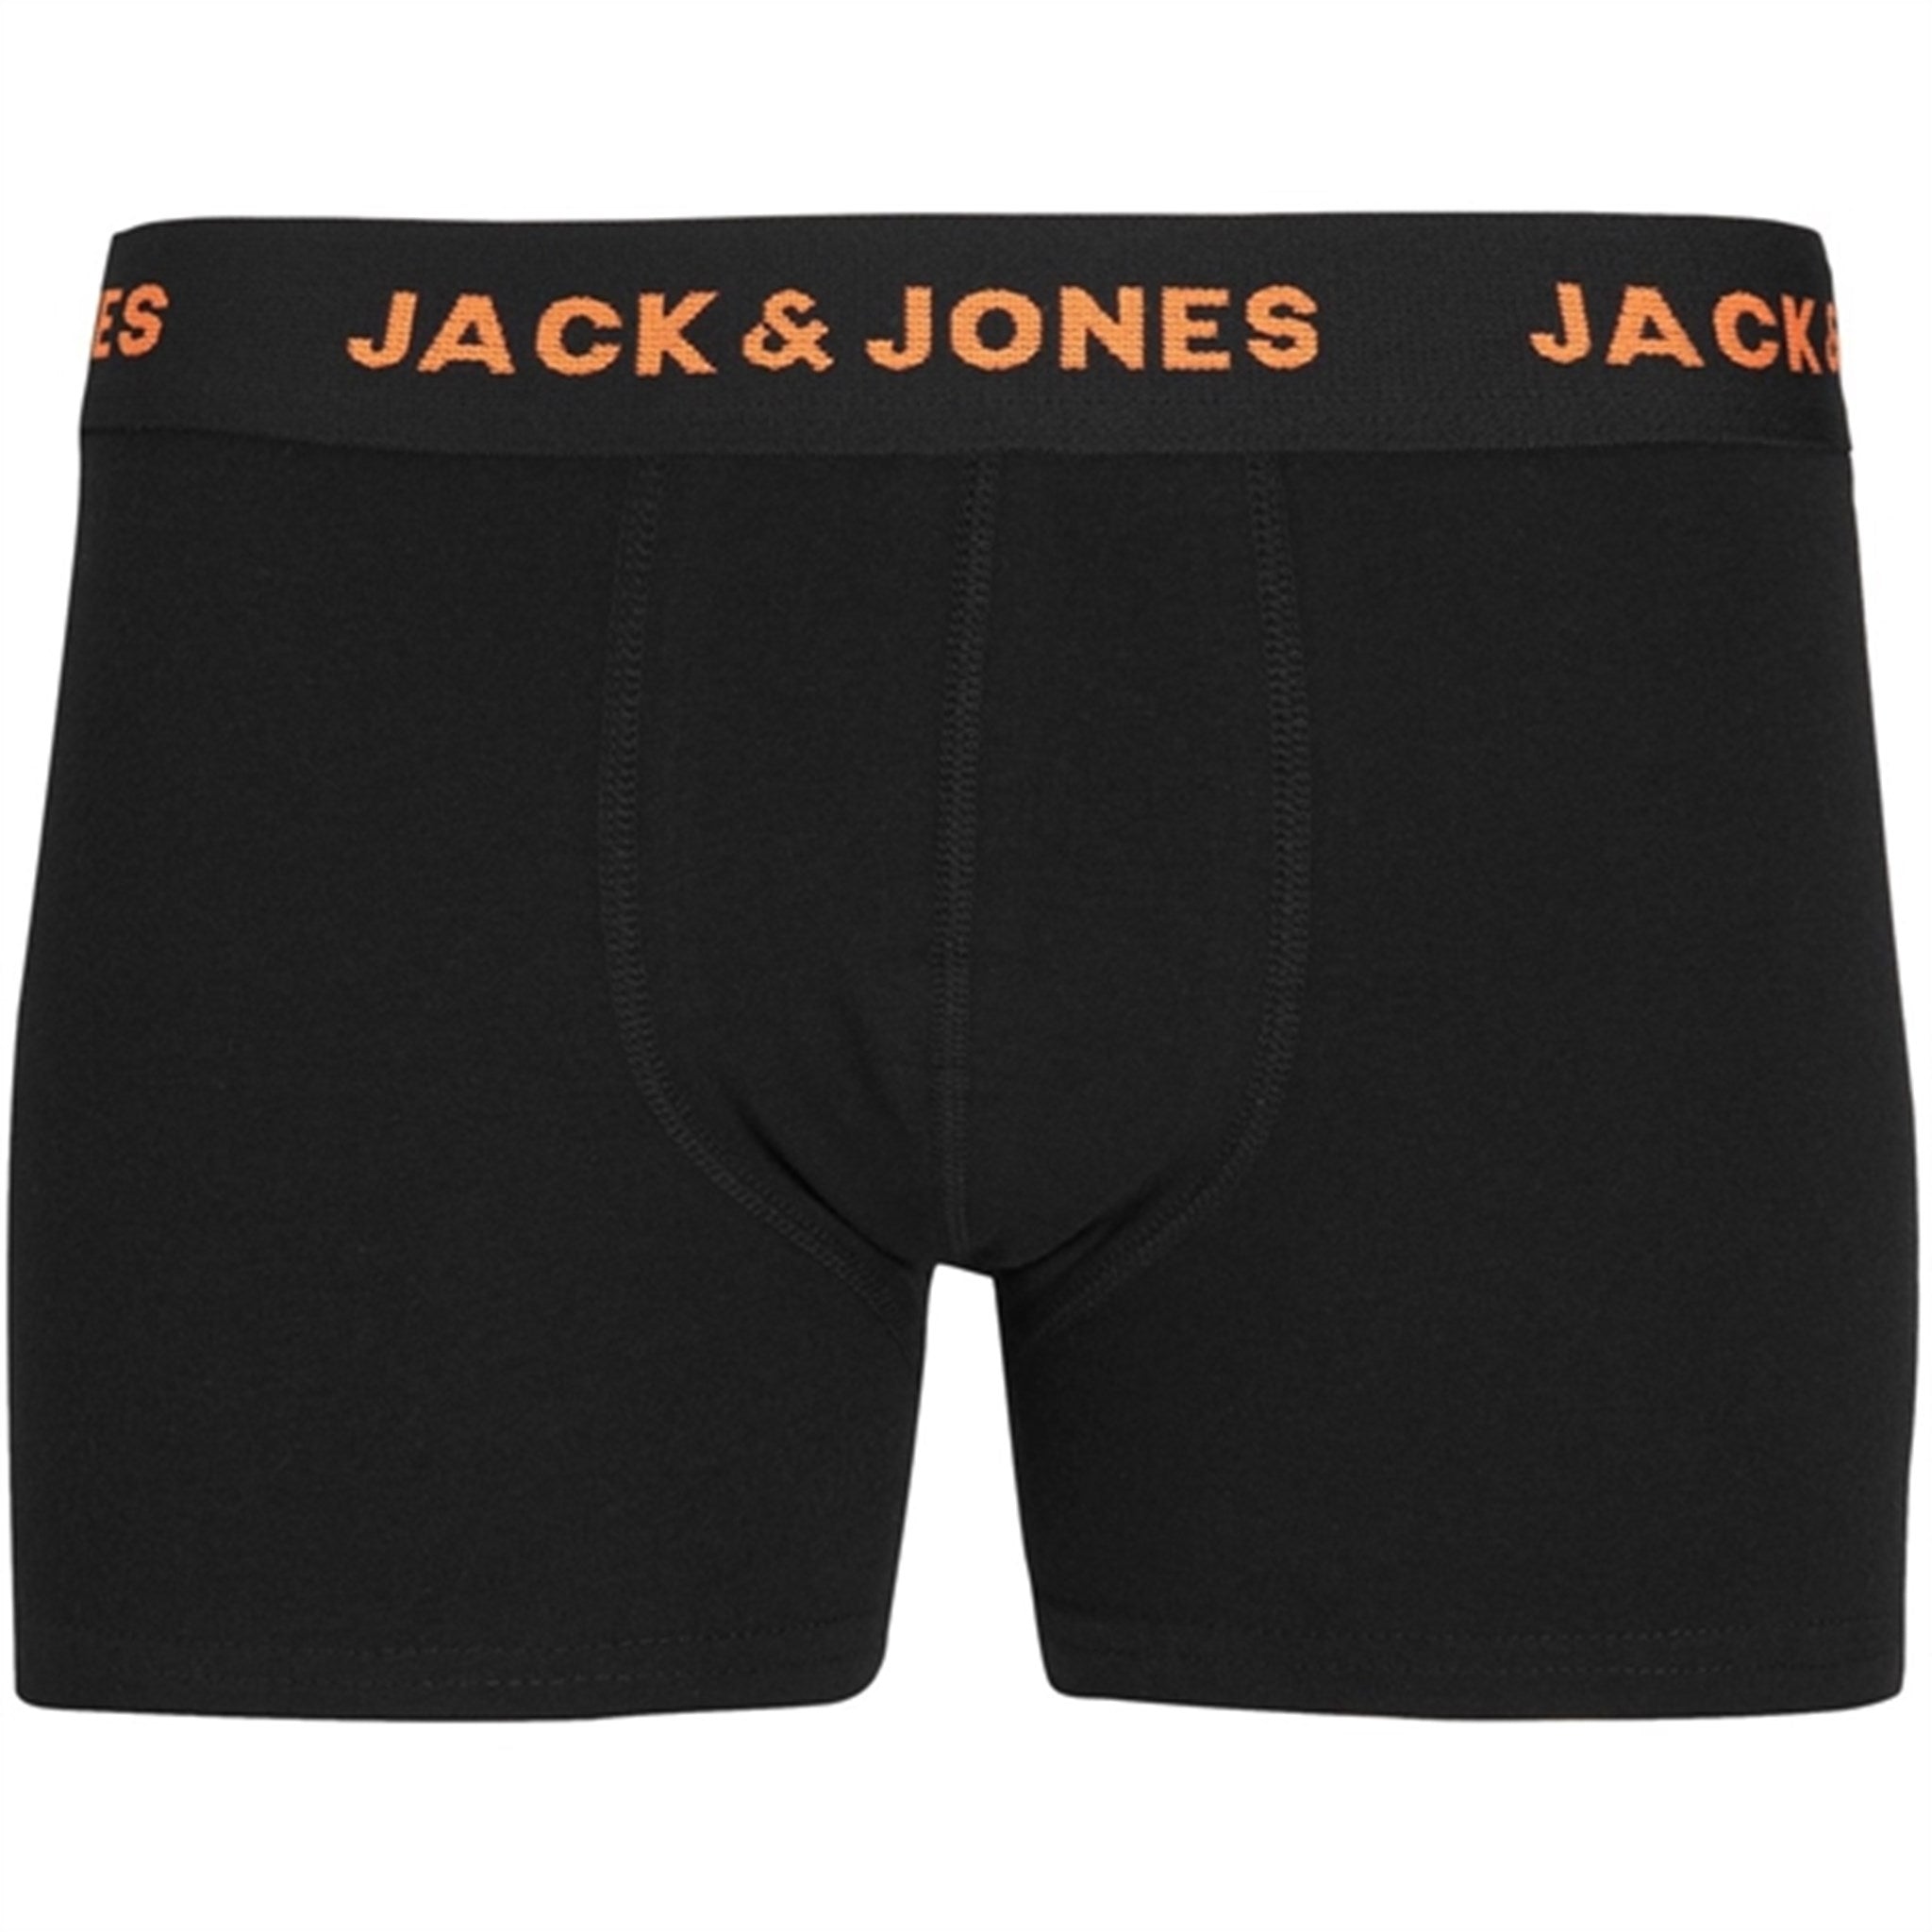 Jack & Jones Junior Black Basic Boxershorts 7-pak Noos 5